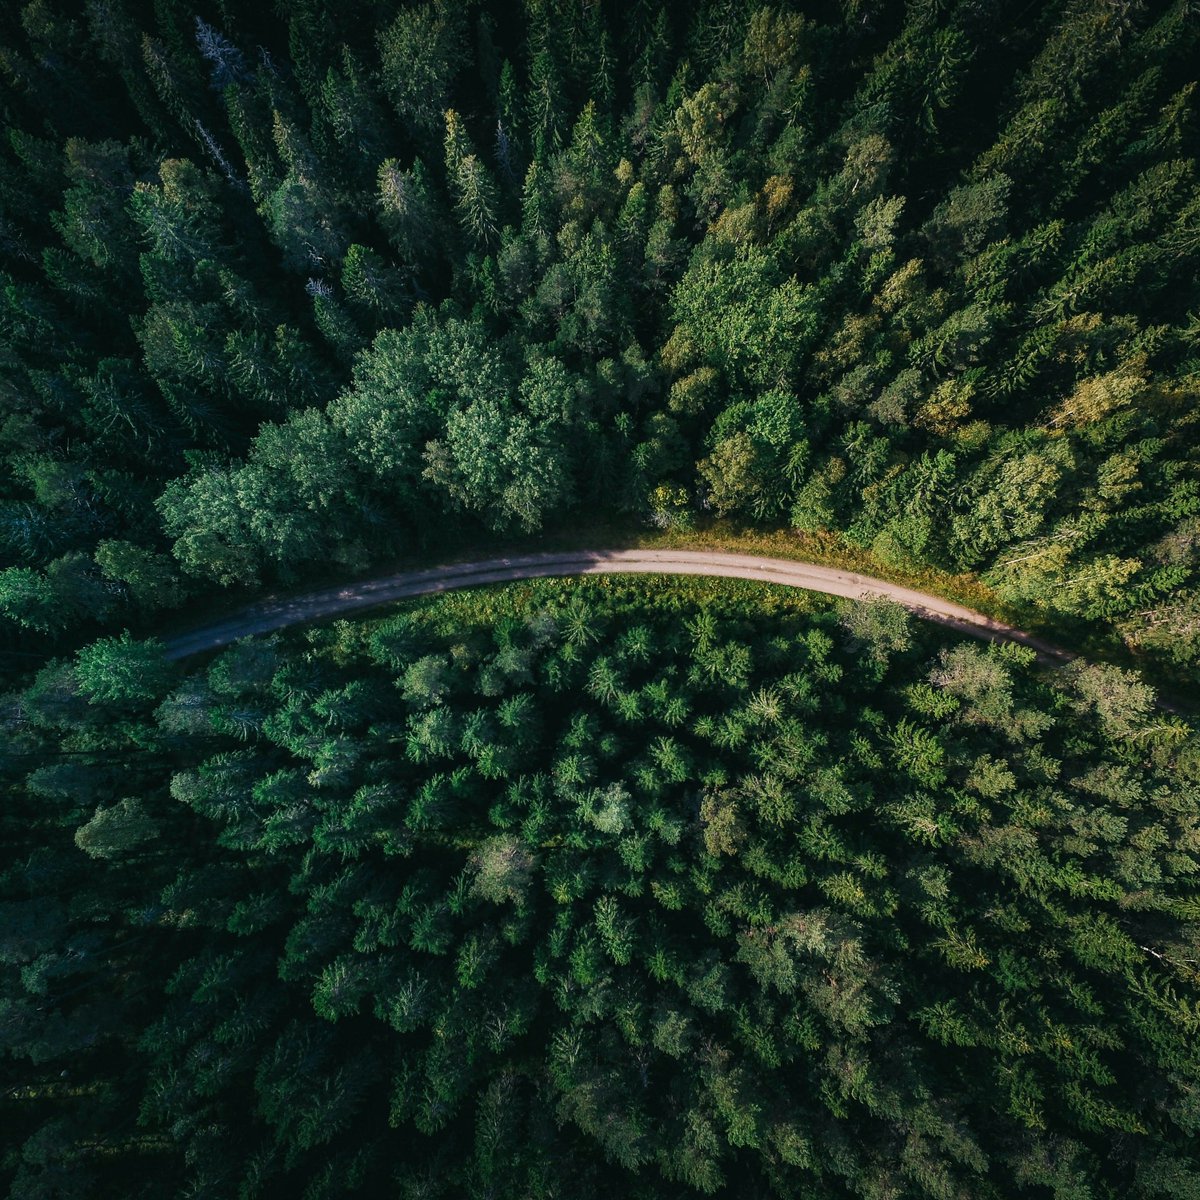 Su @NatCities studio rivela che aree periurbane del pianeta spesso degradate o inutilizzate potrebbero ospitare tra 106 e 241 miliardi di alberi, con conseguente riduzione emissioni CO2, miglioramento qualità dell'aria e conservazione della biodiversità. 🔎bit.ly/CFnews_Foreste